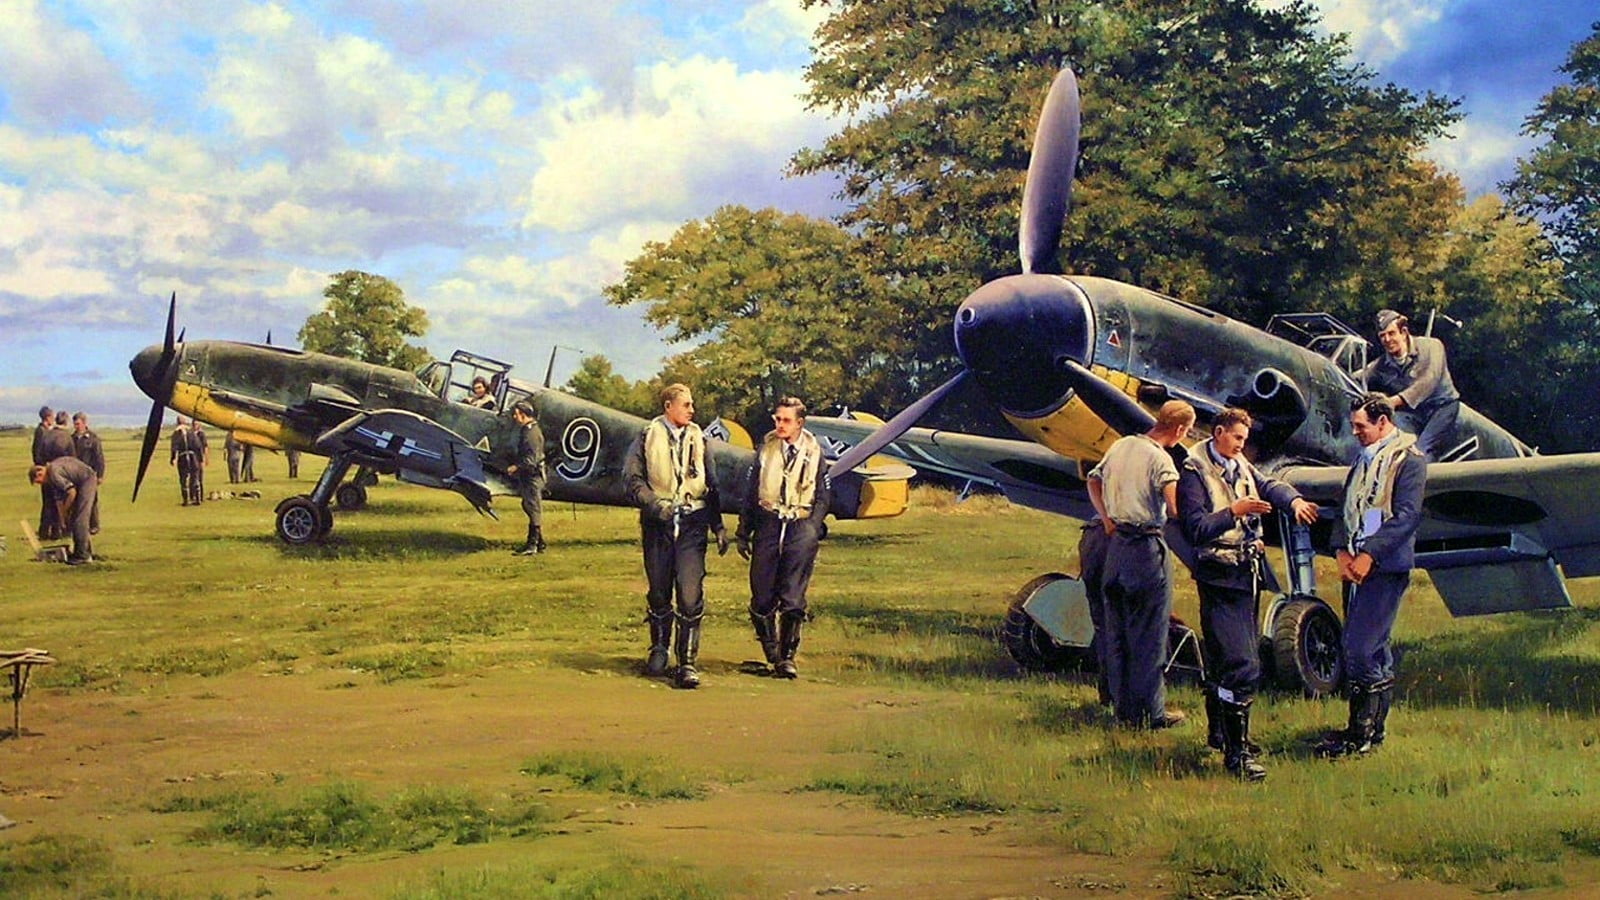 vintage airplanes and pilots painting, Messerschmitt, Messerschmitt Bf-109, World War II, Germany